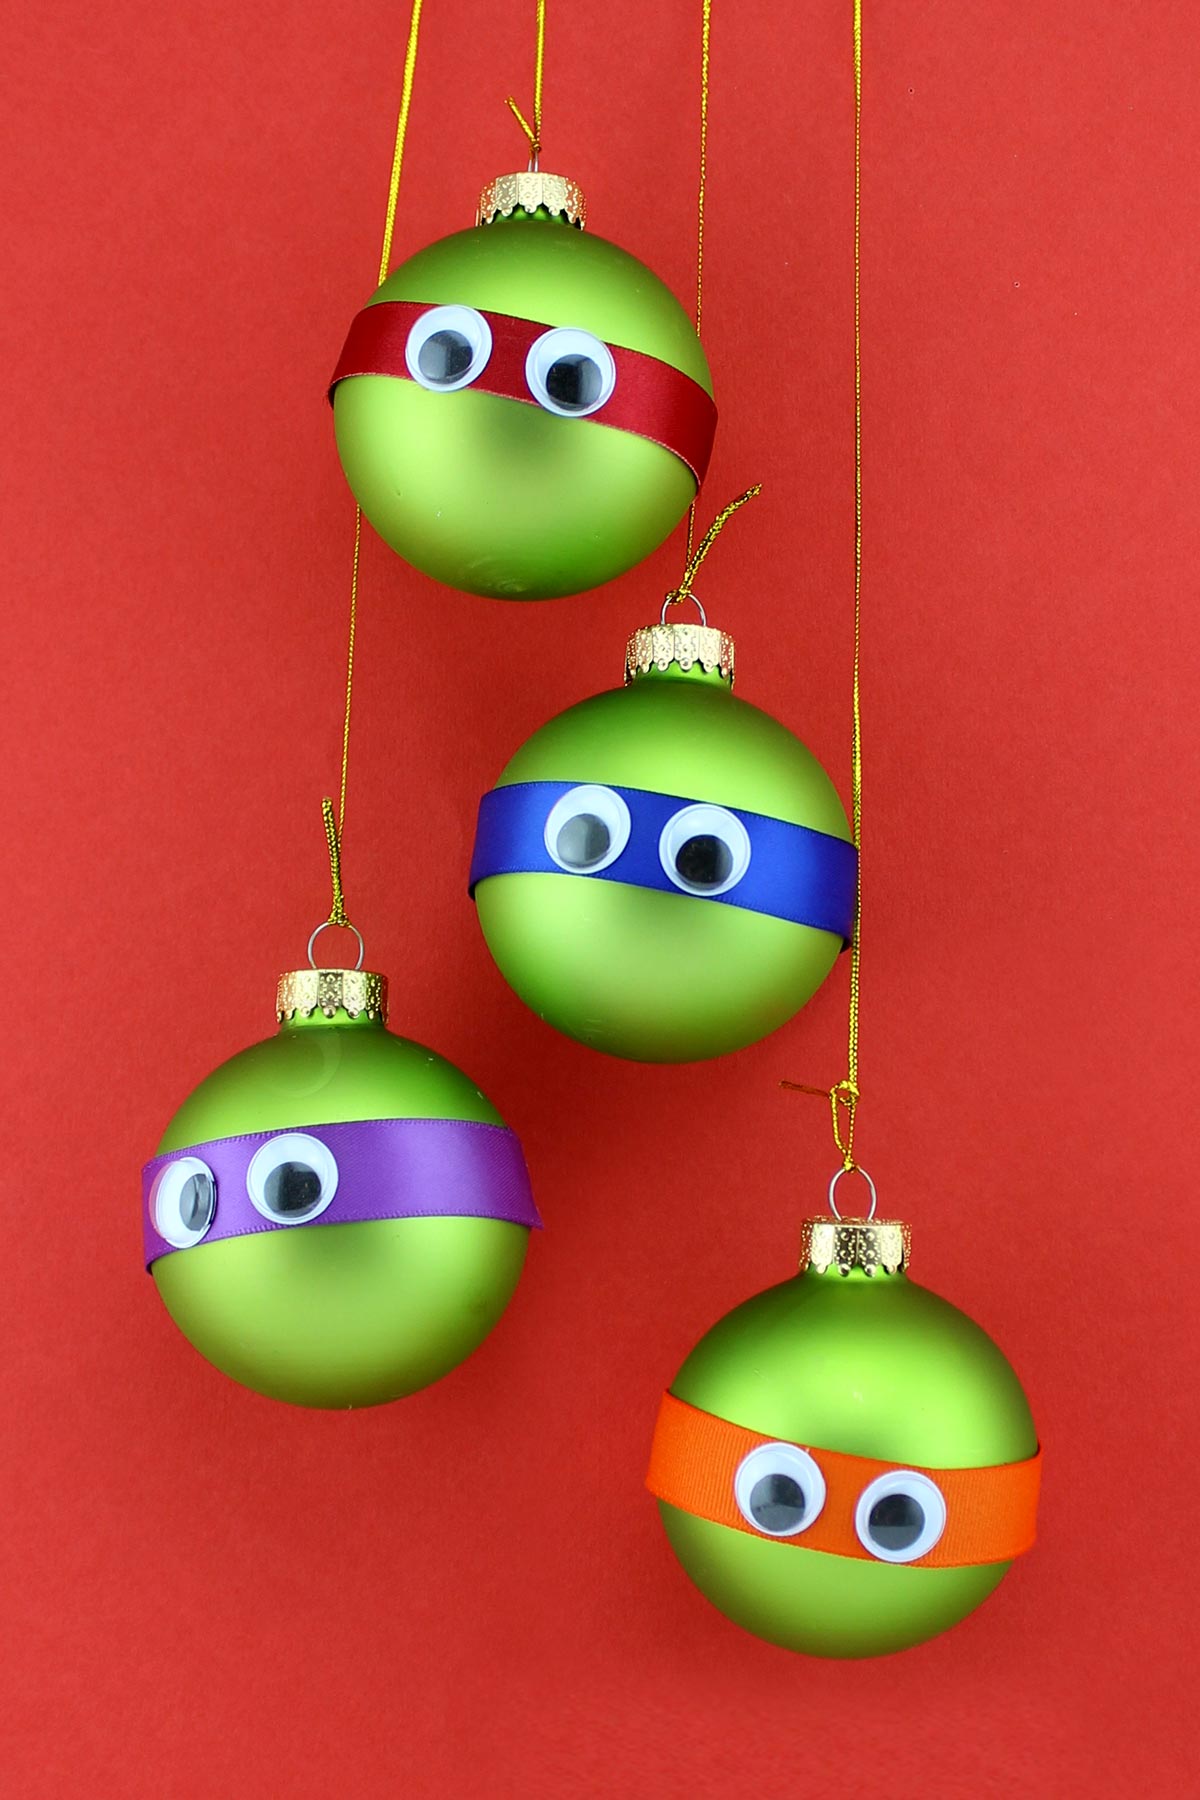 TMNT Googly-eyed Ornaments